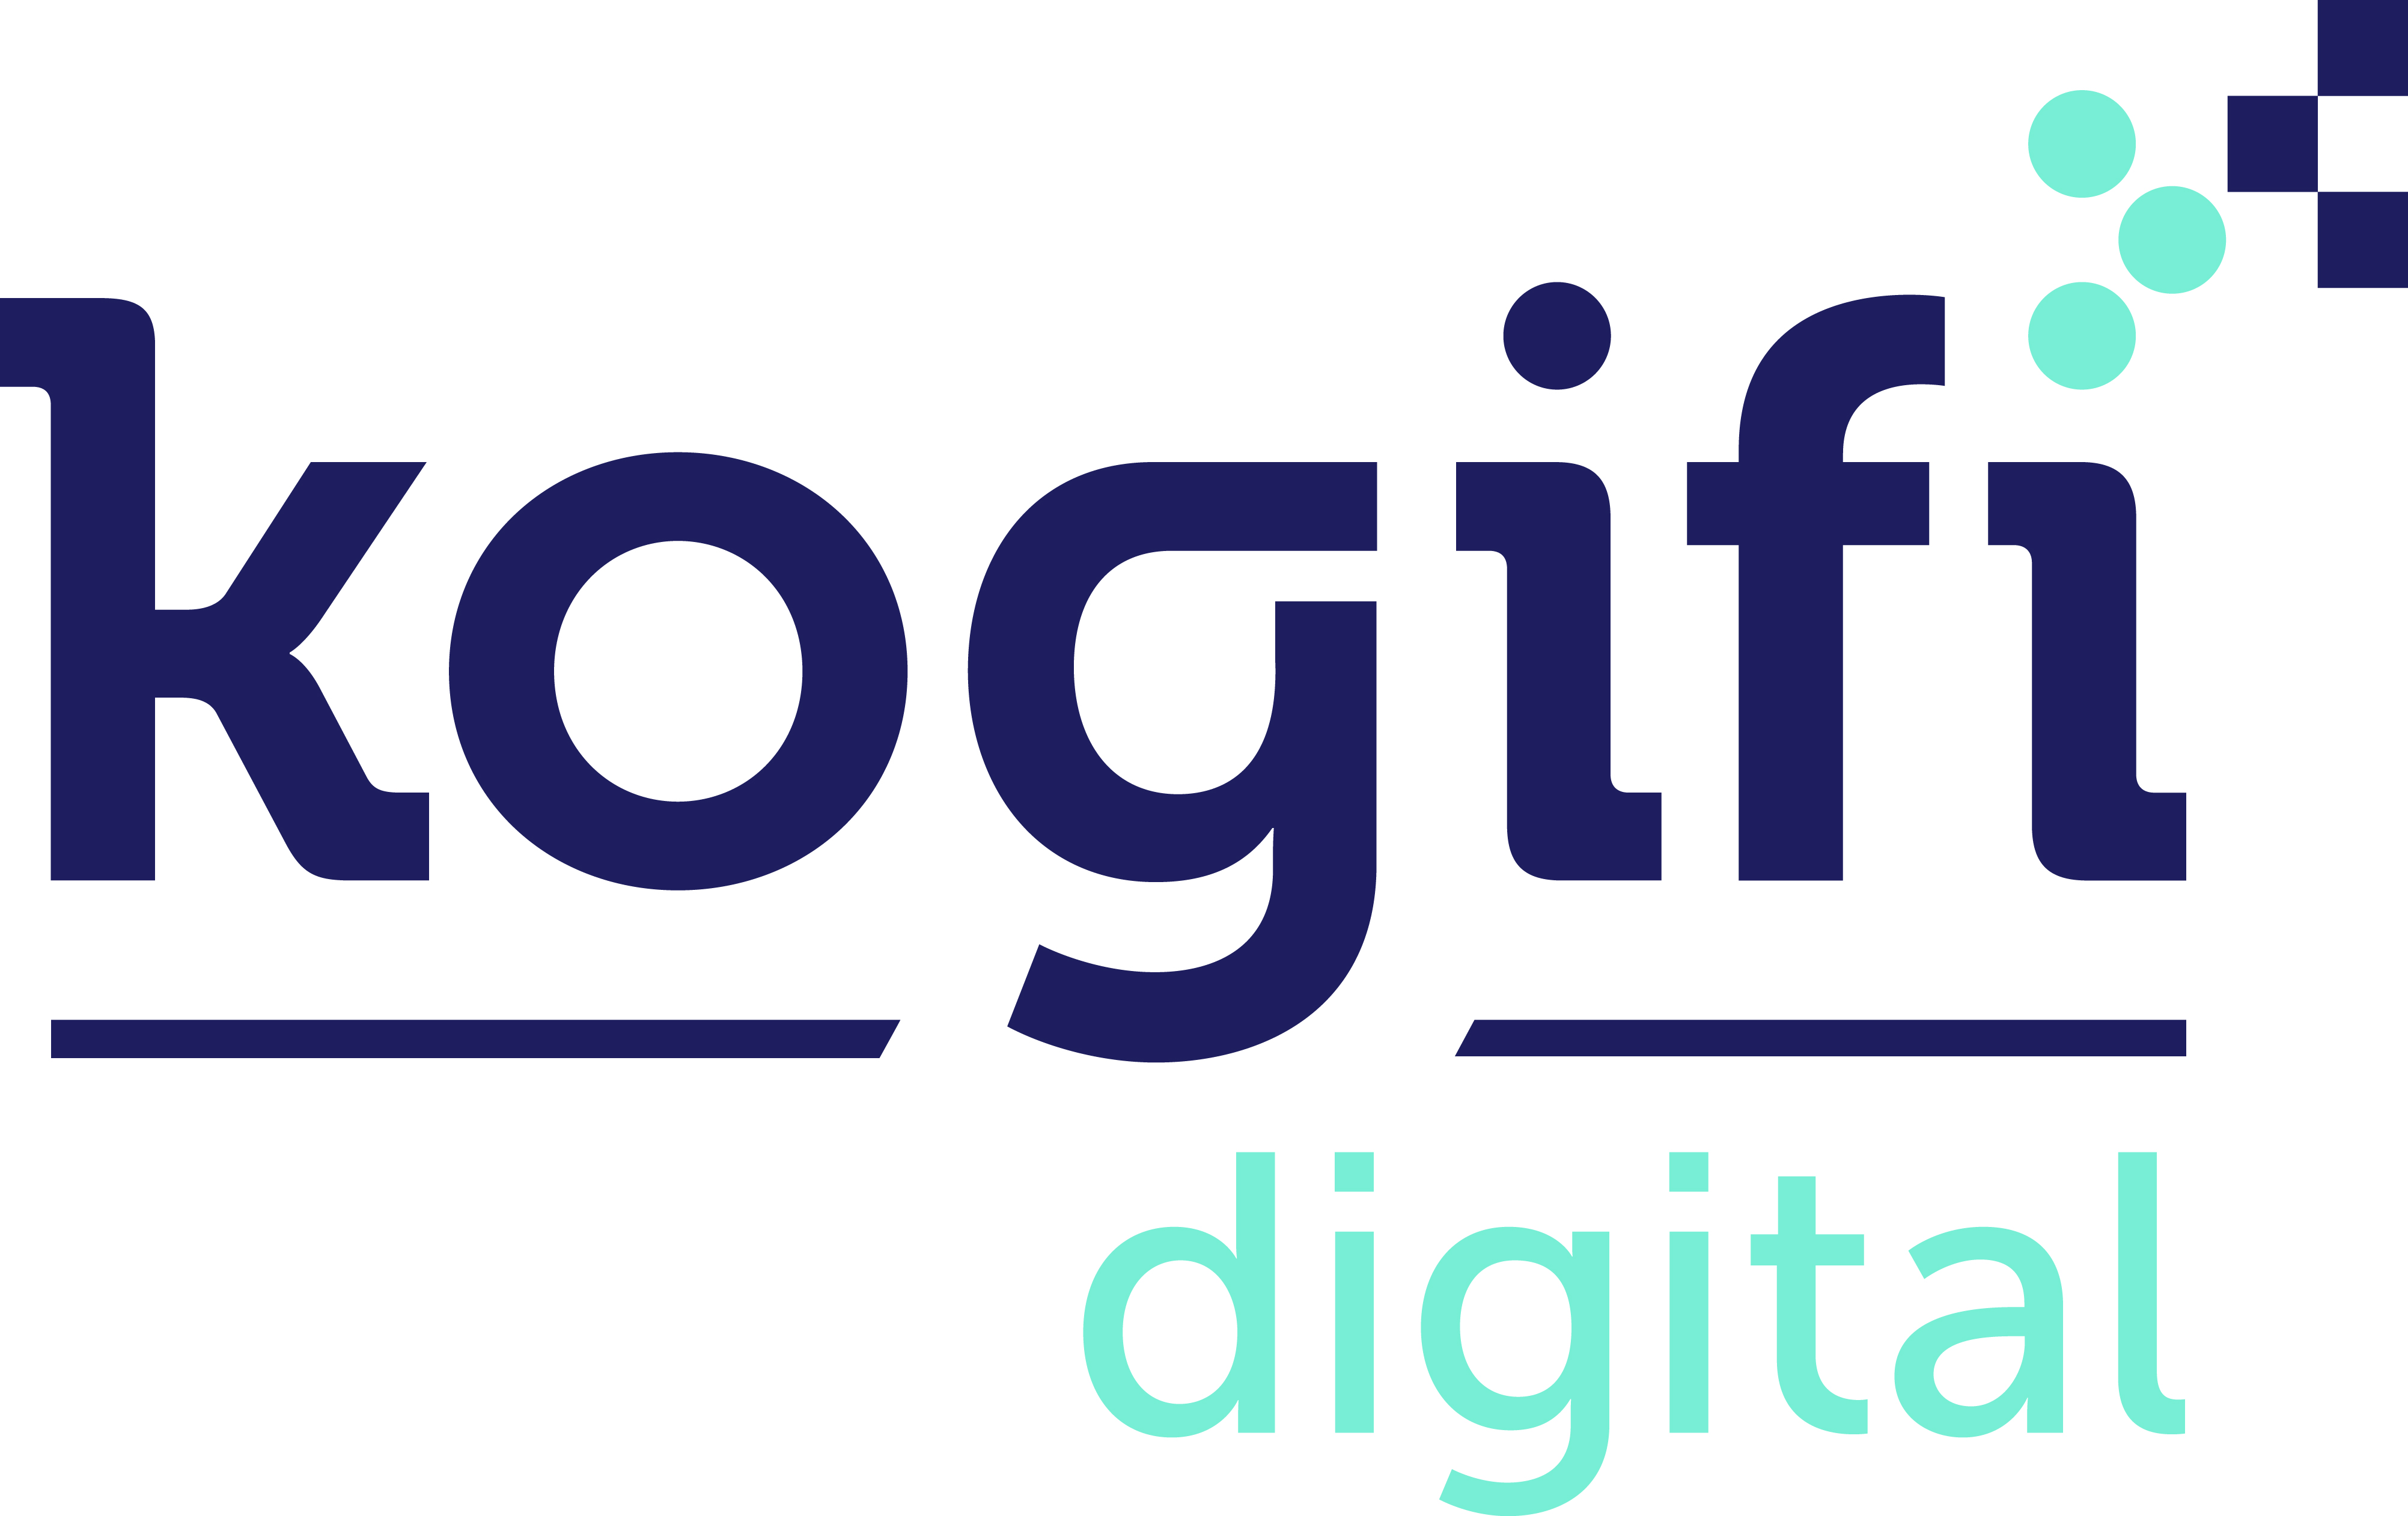 Kogifi Digital